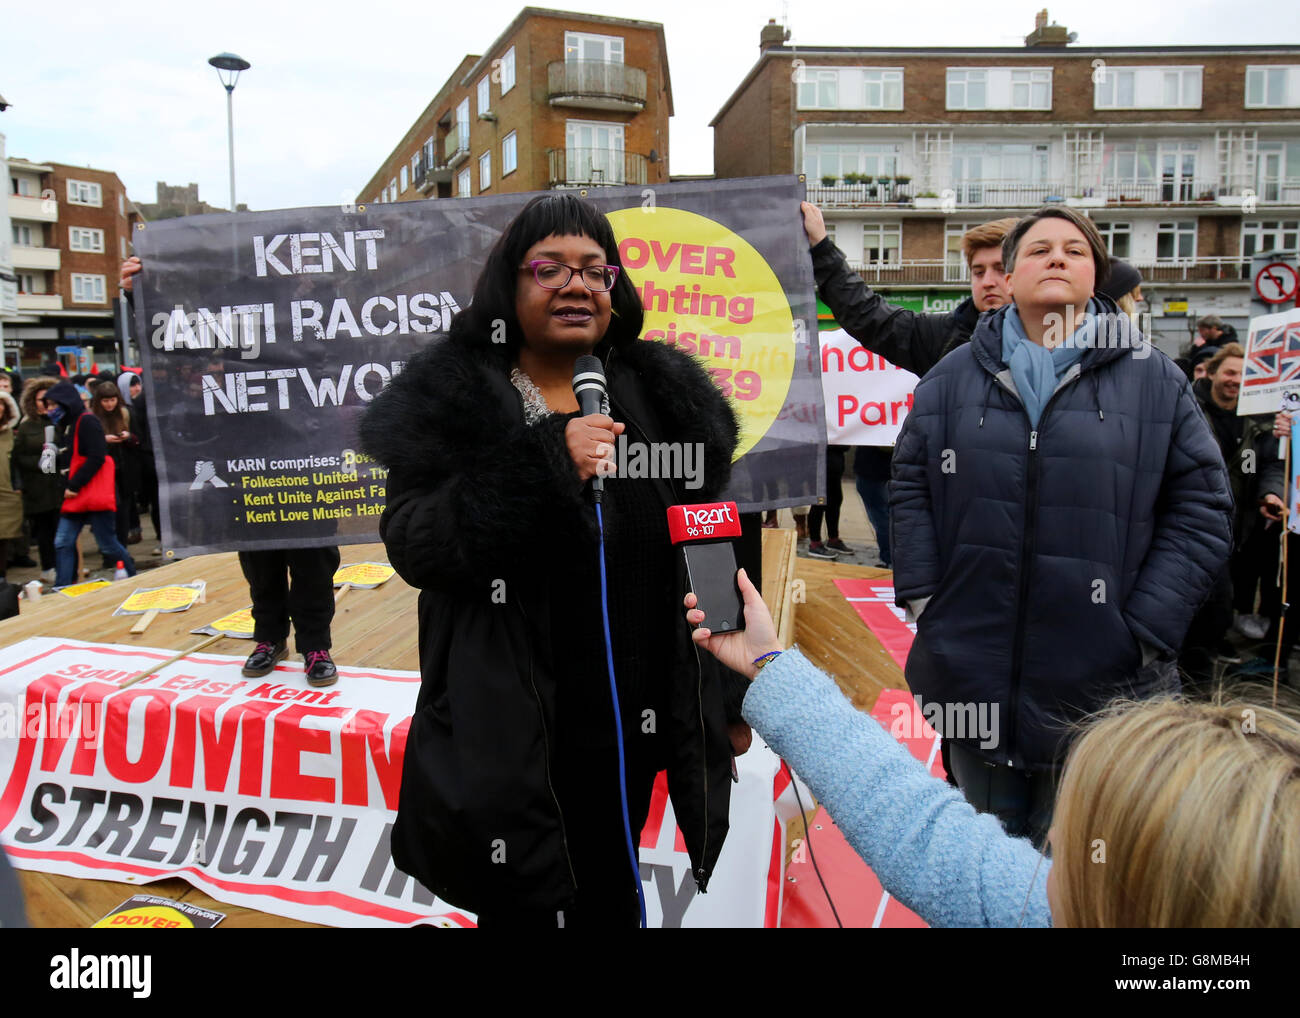 Le député de Diane Abbott prononce un discours au cours d'une contre-manifestation en tant que groupes d'extrême-droite protestant contre l'immigration à Douvres, dans le Kent. Banque D'Images